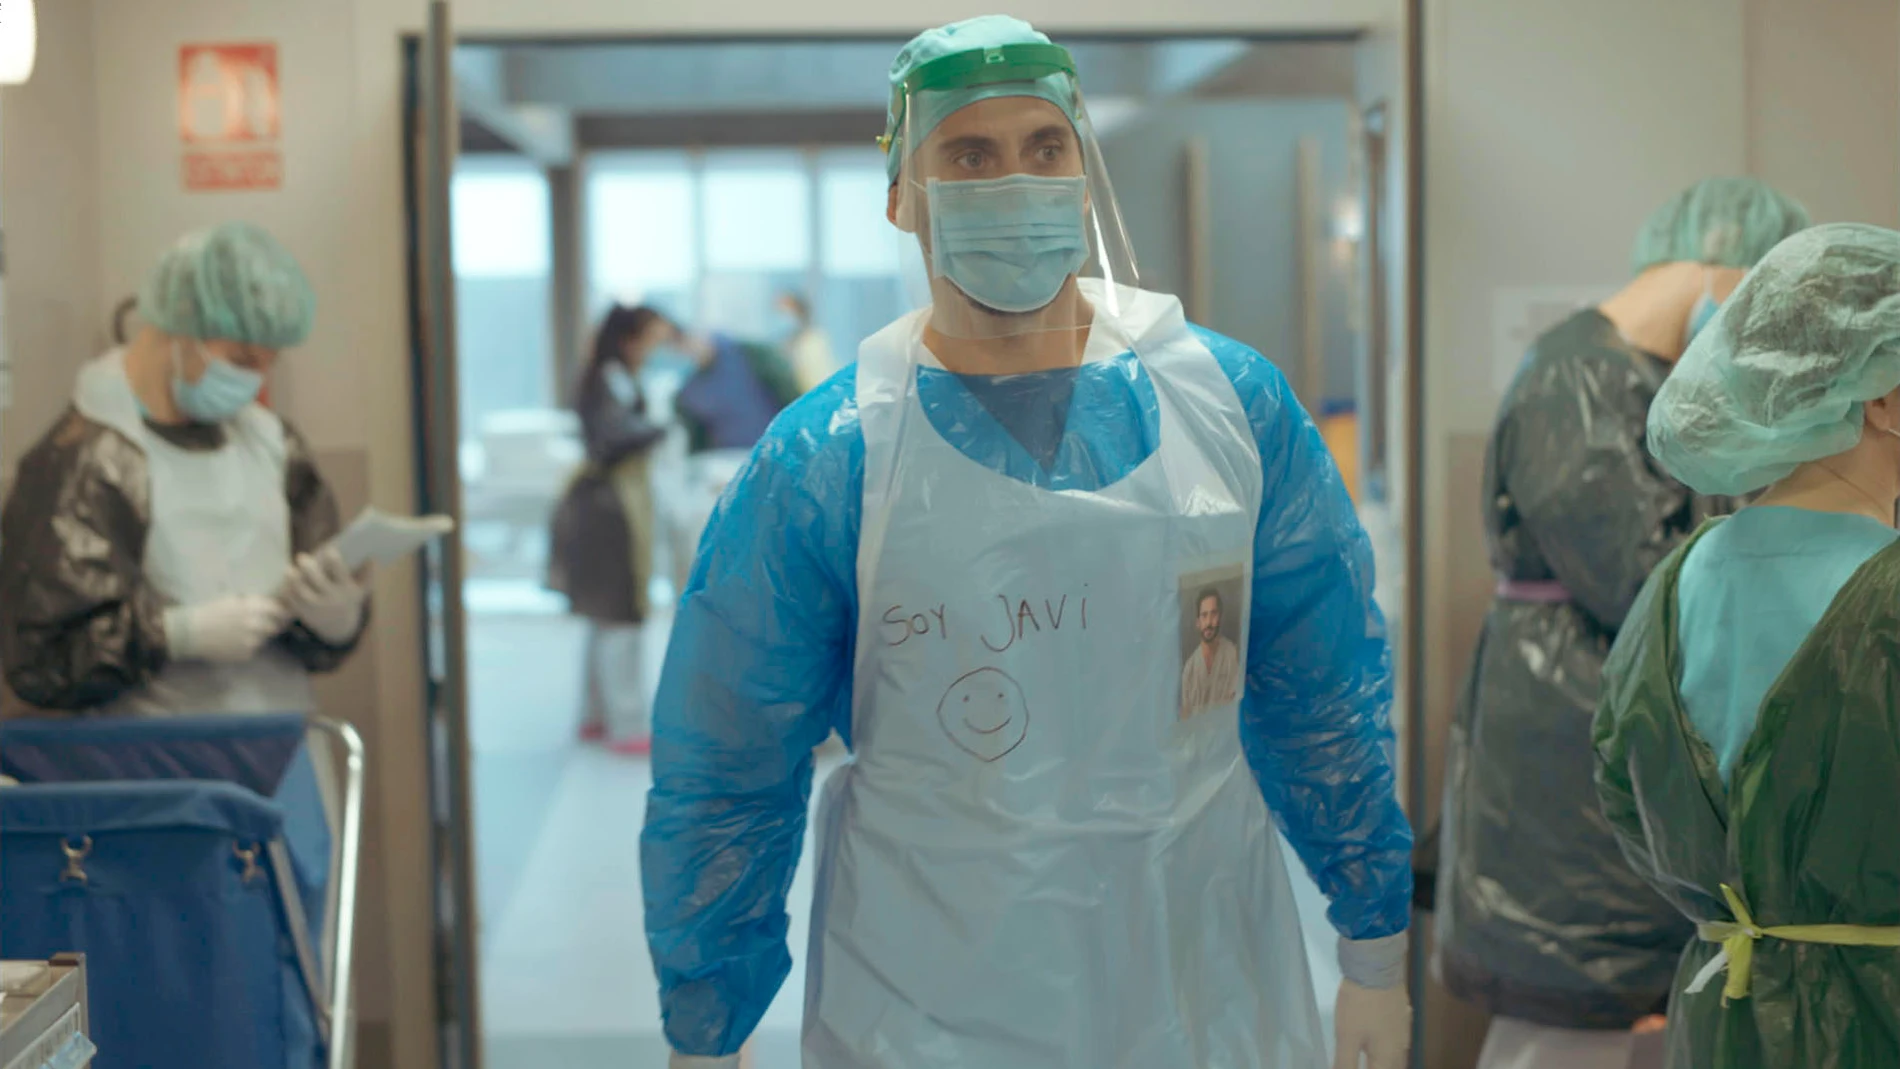 Paco León interpreta a un auxiliar de enfermería en primera línea contra la Covid-19